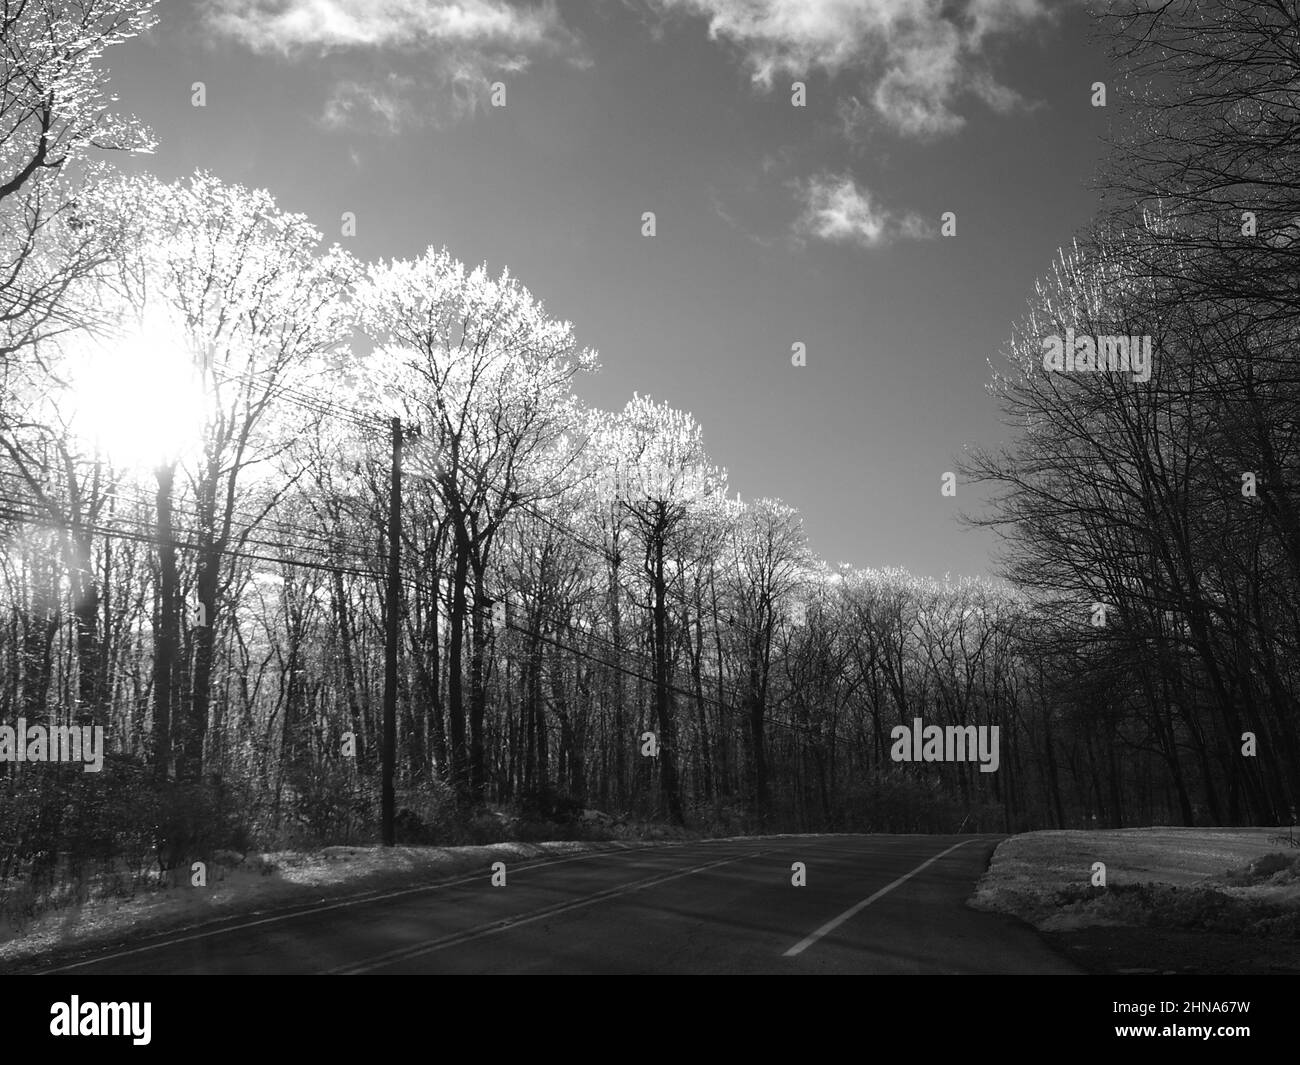 Eisige Bäume entlang einer Jefferson Township, New Jersey Road nach einem Tauwetter und Frost. Schwarz-weiße Landschaft. Stockfoto